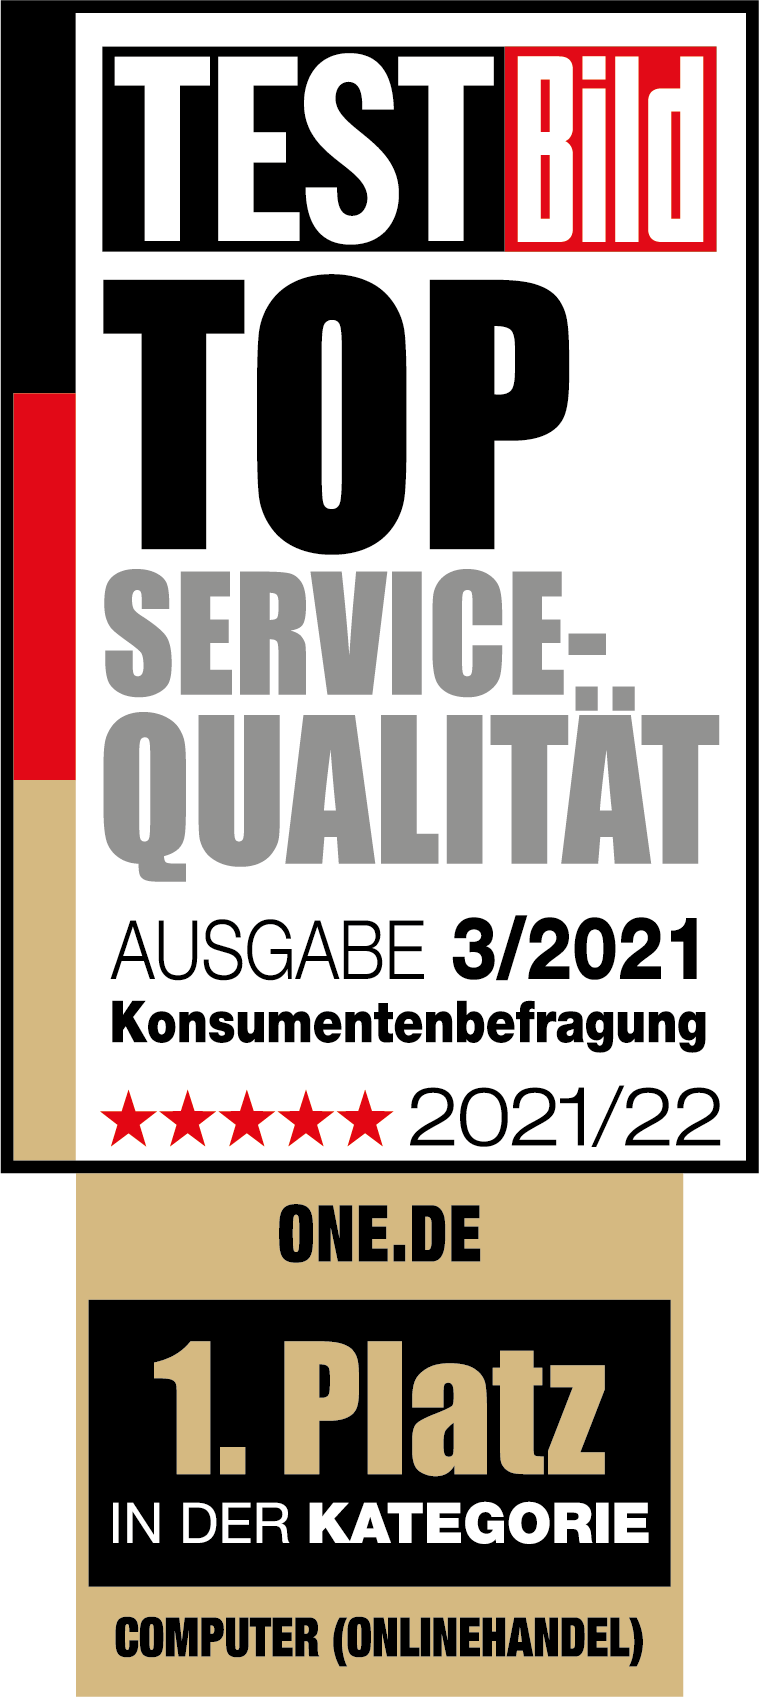 TESTBild Top Service-Qualität 2021/22